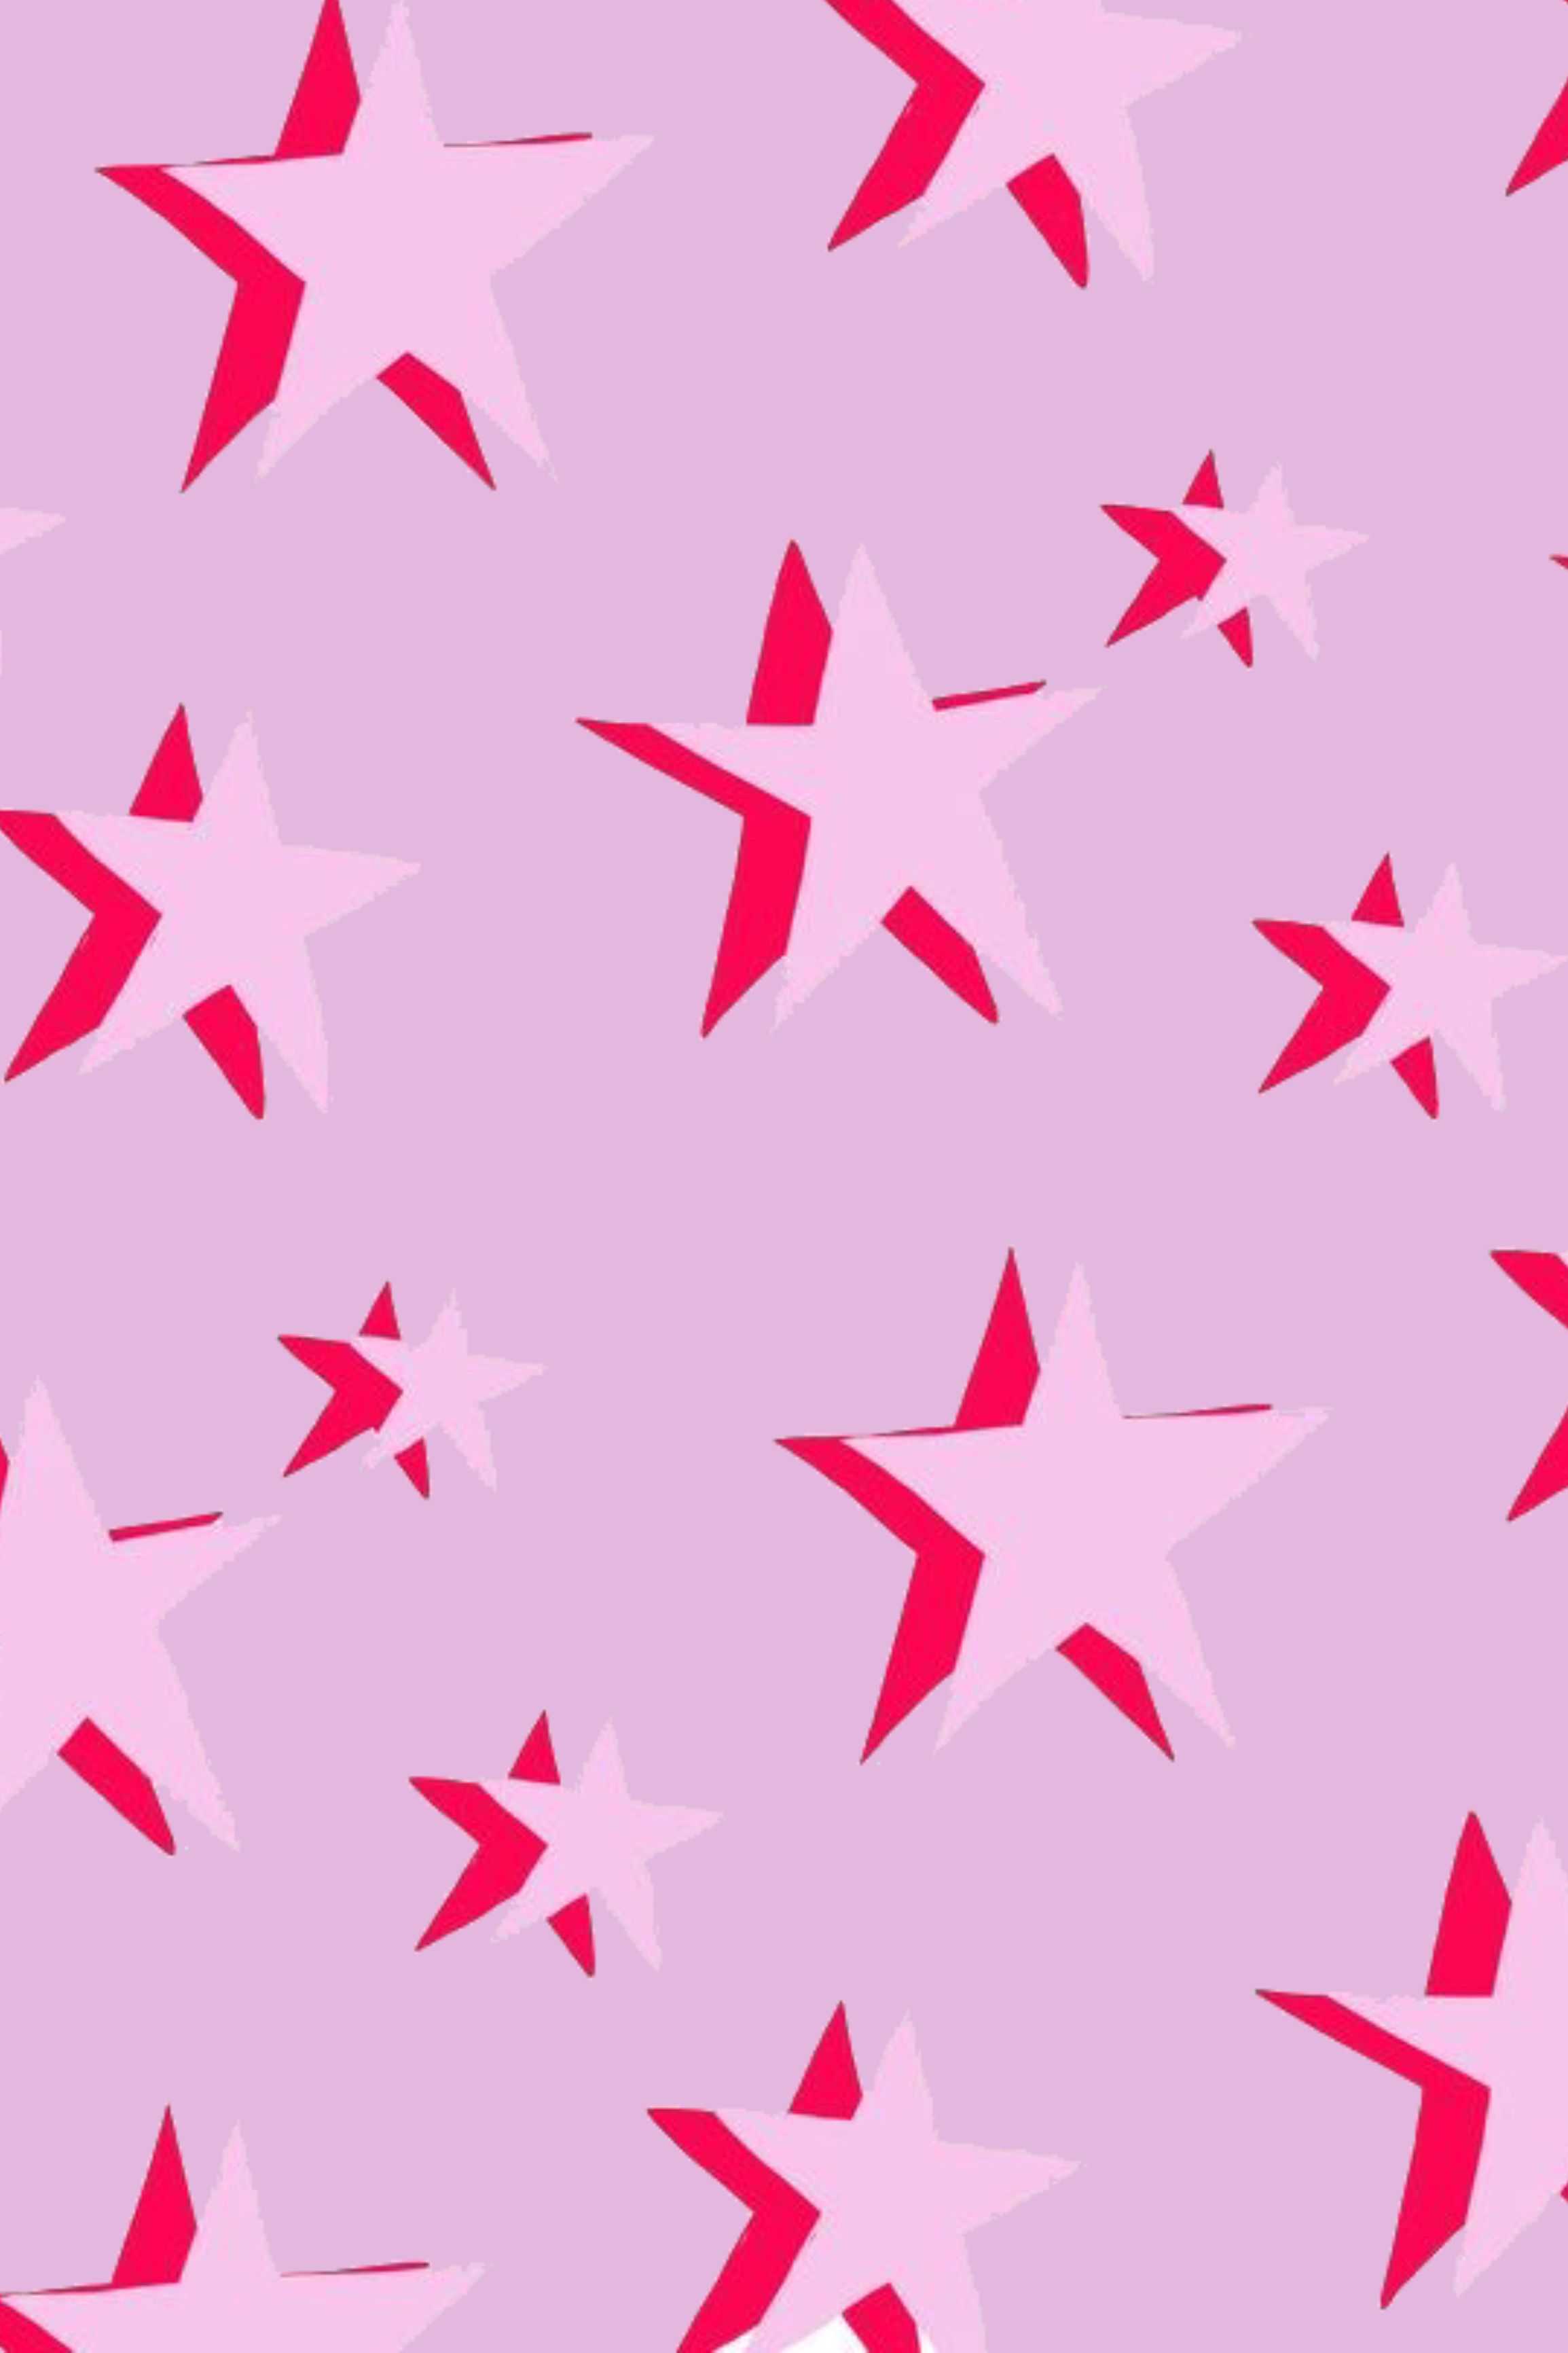 Hình nền thẩm mỹ Preppy Pink Wallpapers - Vẻ đẹp thanh lịch và thẩm mỹ của hình nền preppy hồng này chắc chắn sẽ khiến bạn phải ấn tượng. Tải về ngay hôm nay và thay đổi vẻ đẹp của màn hình điện thoại của bạn!